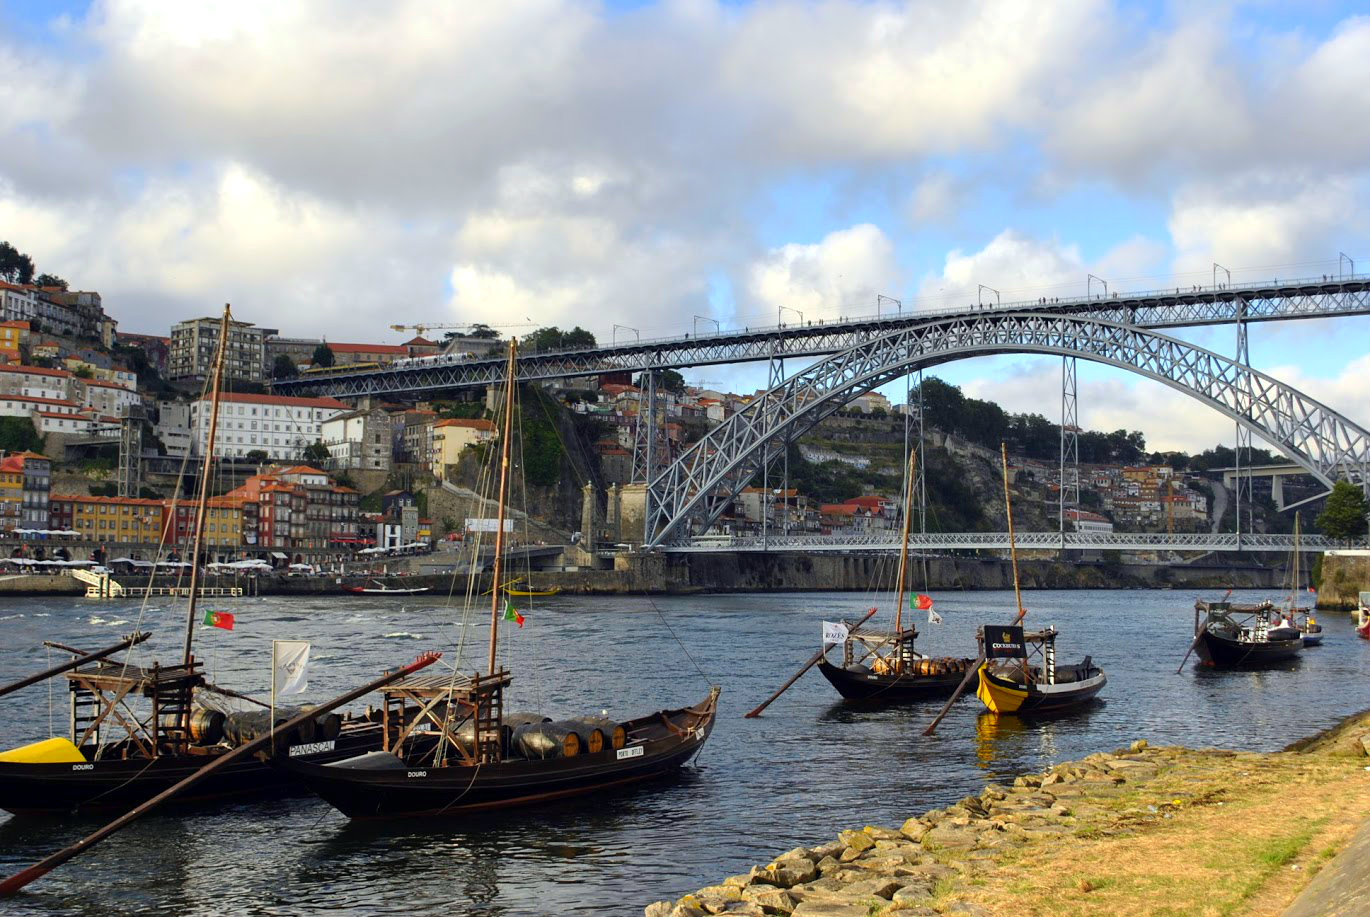 Rebelo Boats on the river Douro, Porto.